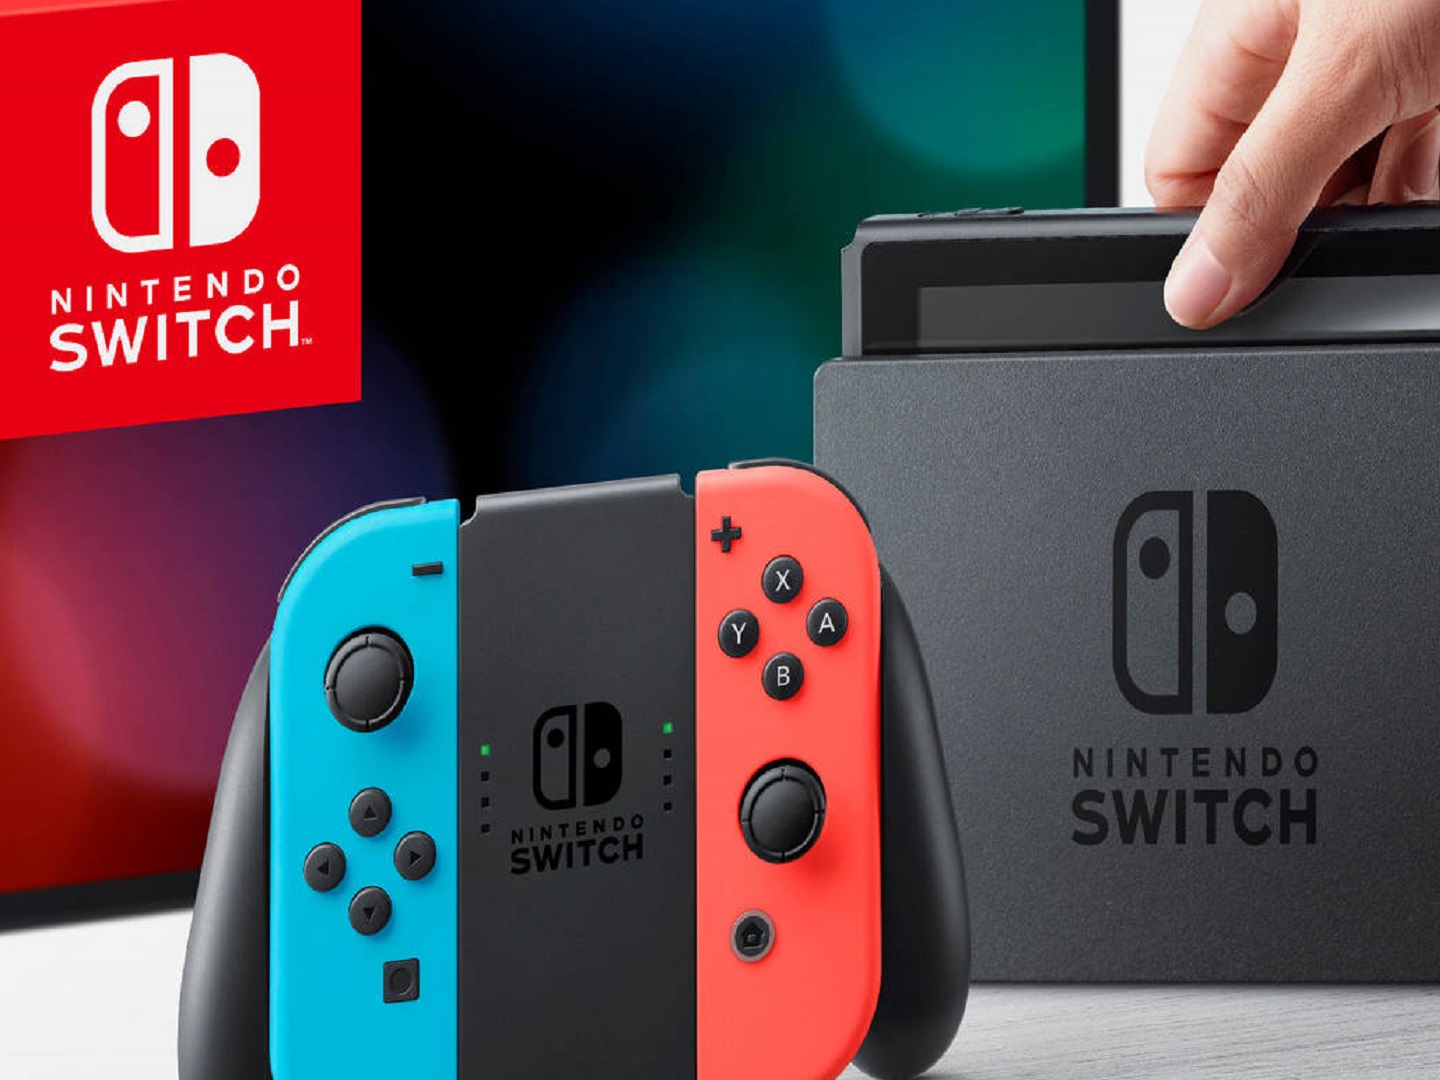 Nintendo switch купить в москве. Nintendo Switch 2. Nintendo Switch Black. Нинтендо свитч 2 в тинкеркат. Nintendo Switch первый 2020.